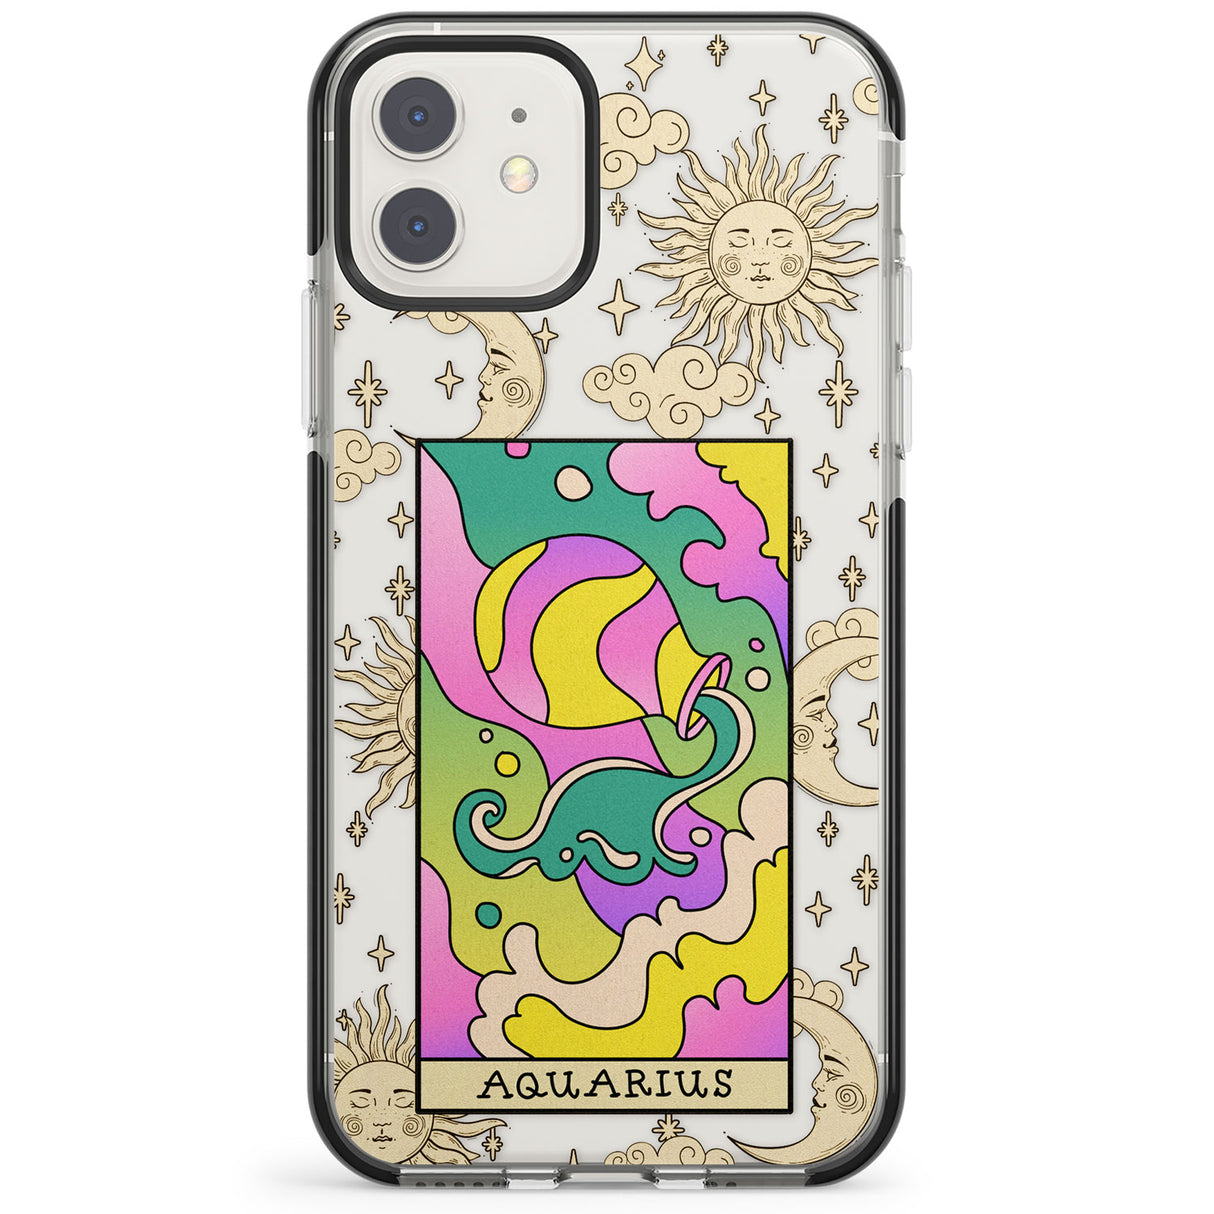 Celestial Zodiac - Aquarius Impact Phone Case for iPhone 11, iphone 12